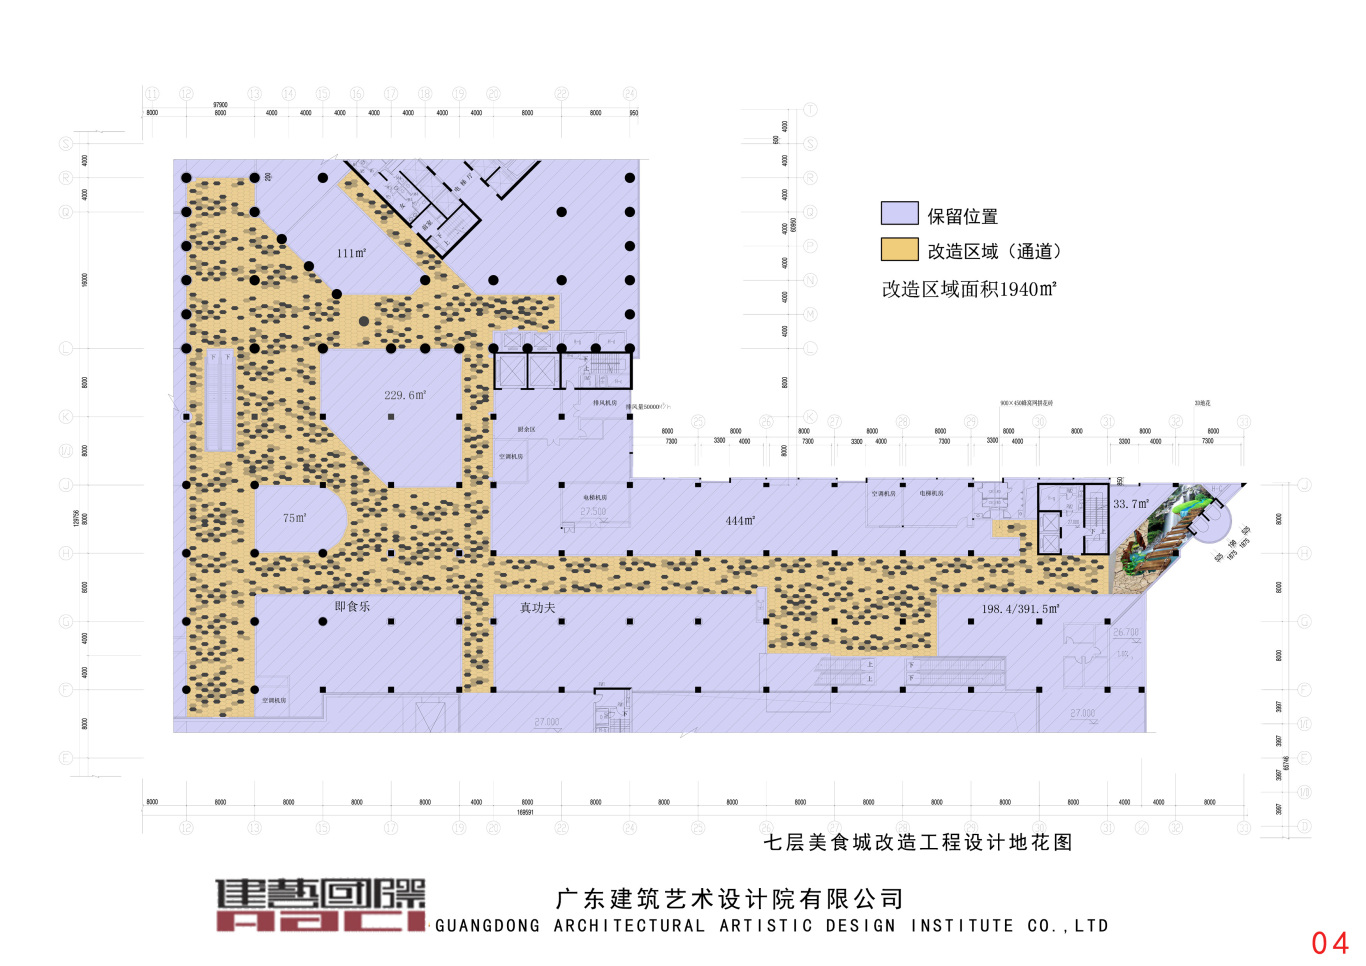 中华广场七楼通道改造工程室内装修工程图7